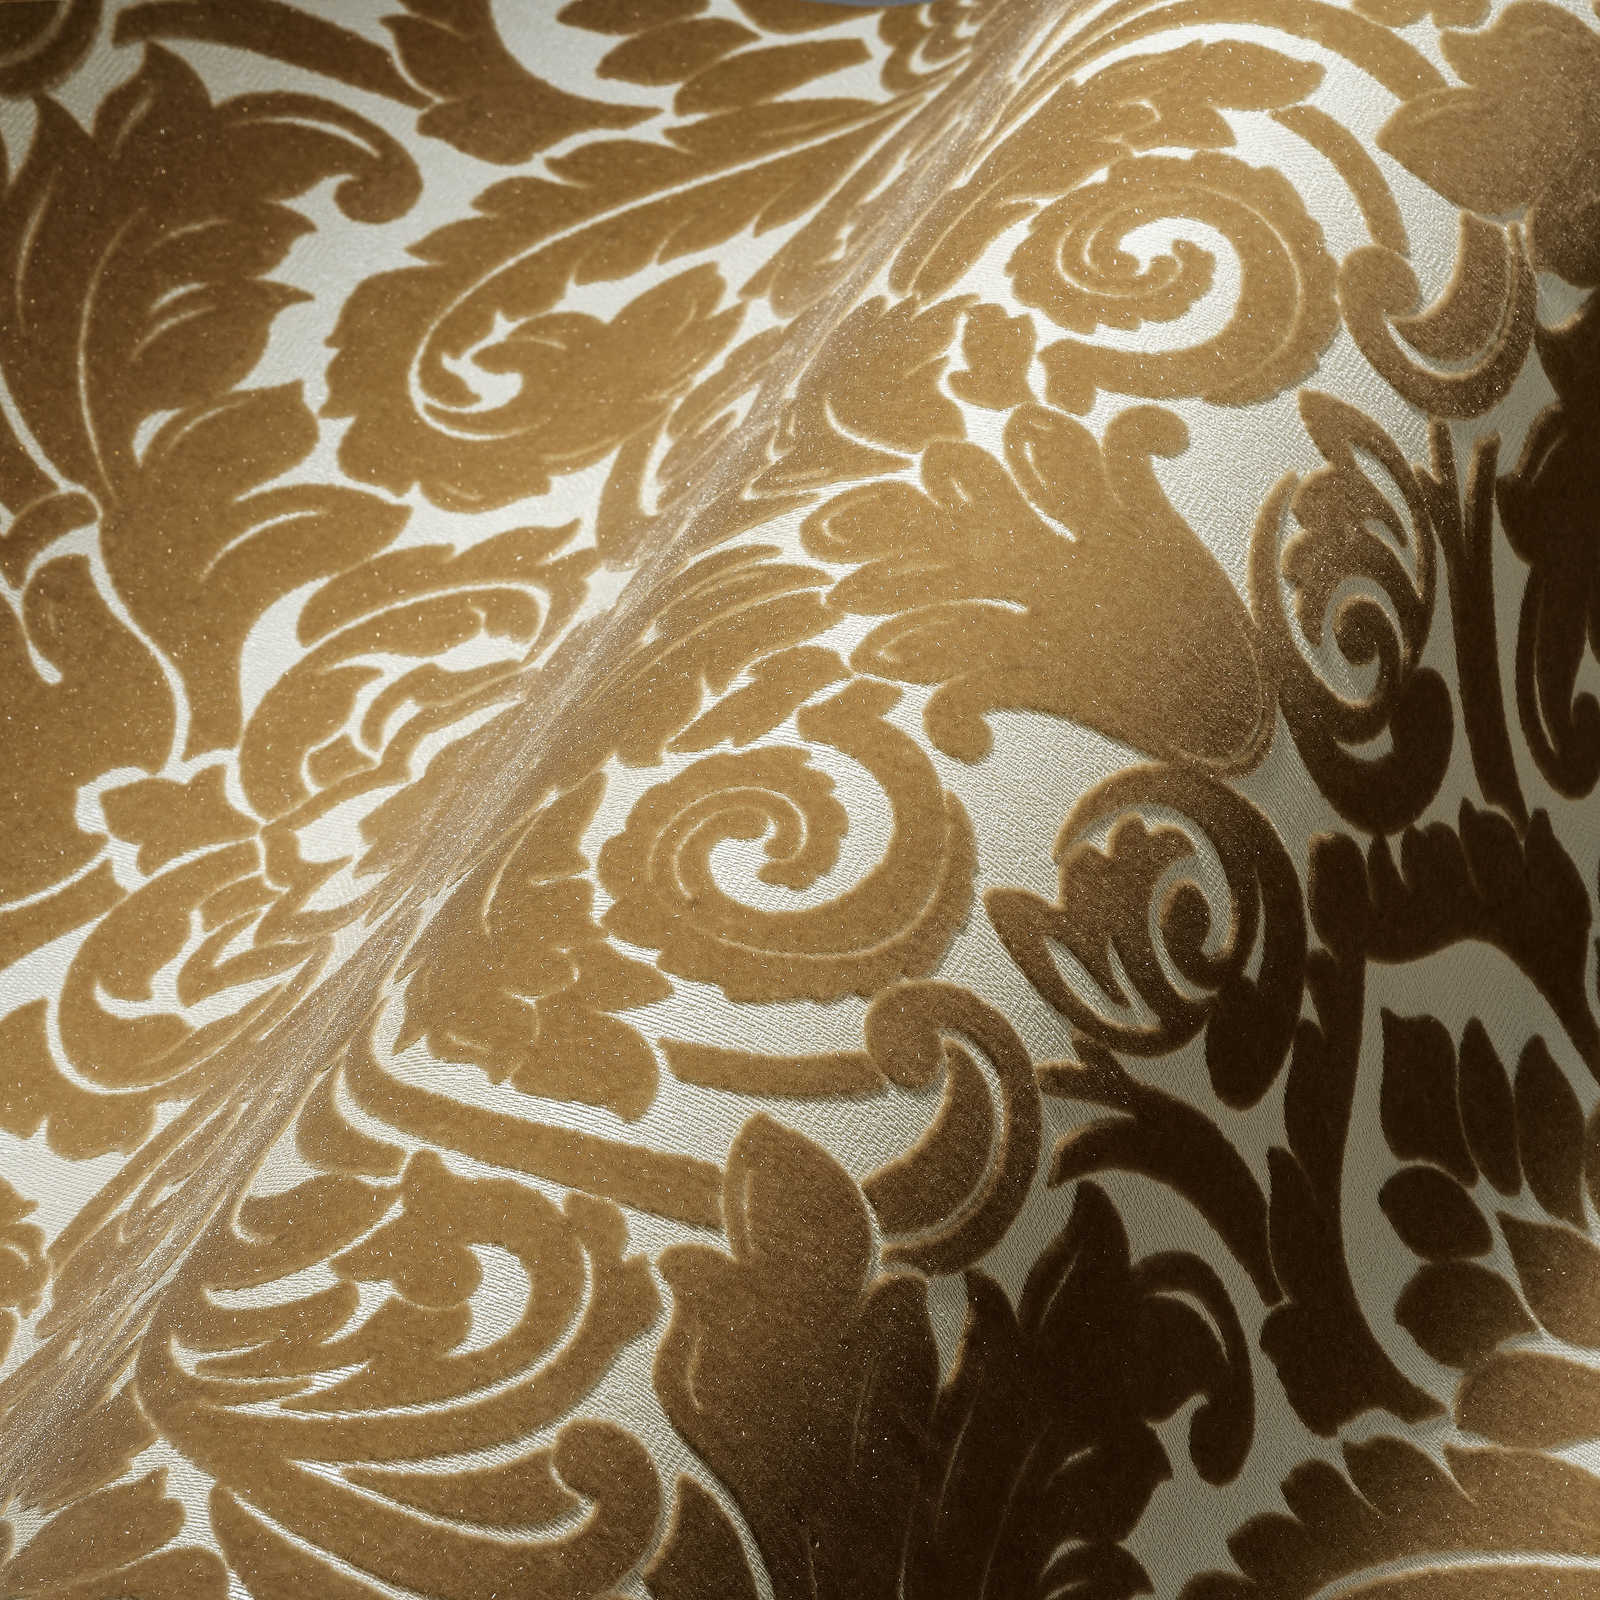             Papier peint baroque avec motif floqué soyeux en or
        